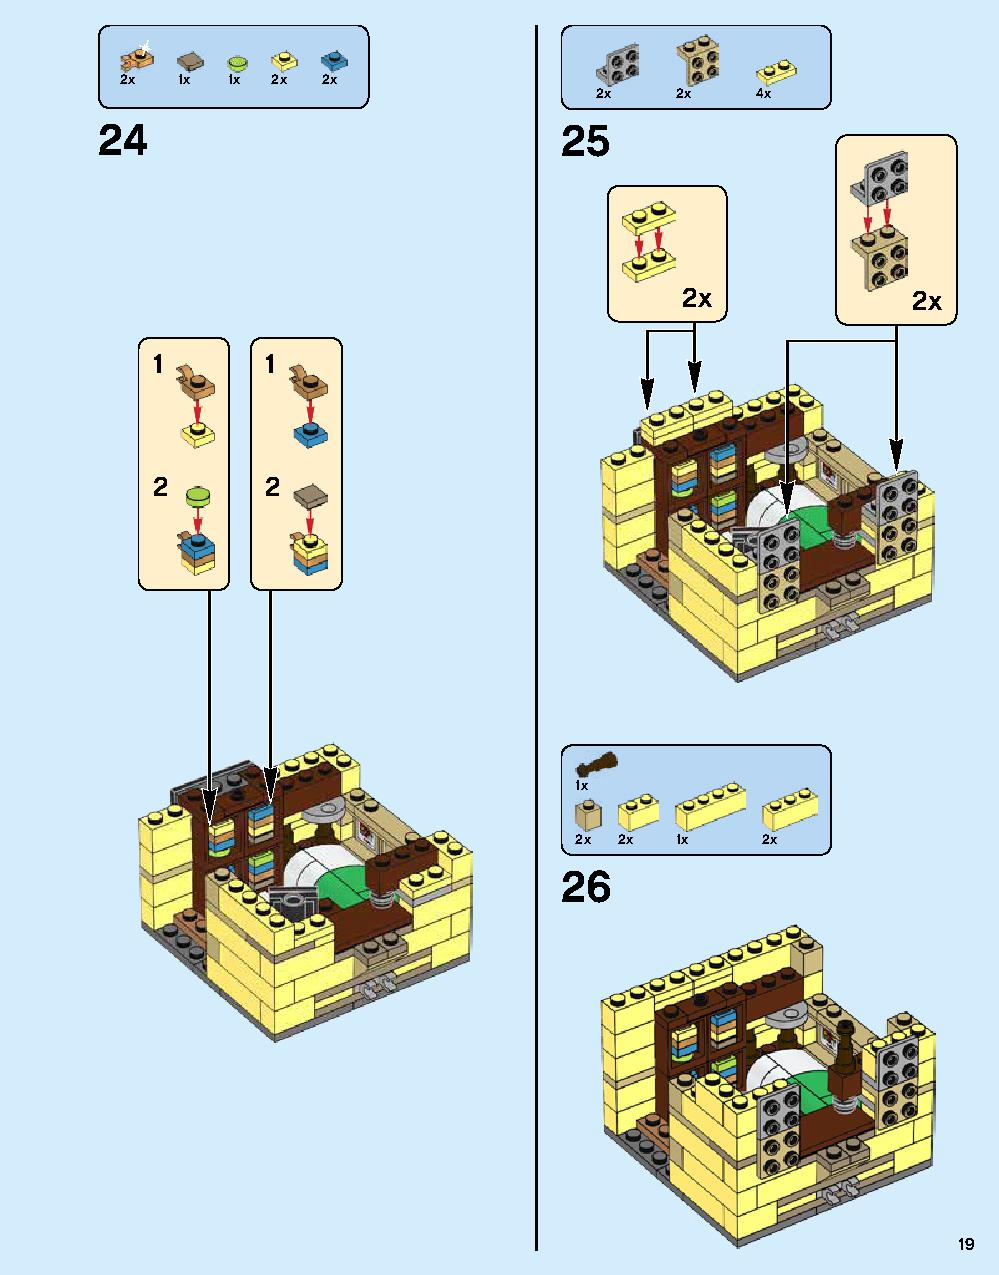 ニンジャゴー シティ 70620 レゴの商品情報 レゴの説明書・組立方法 19 page